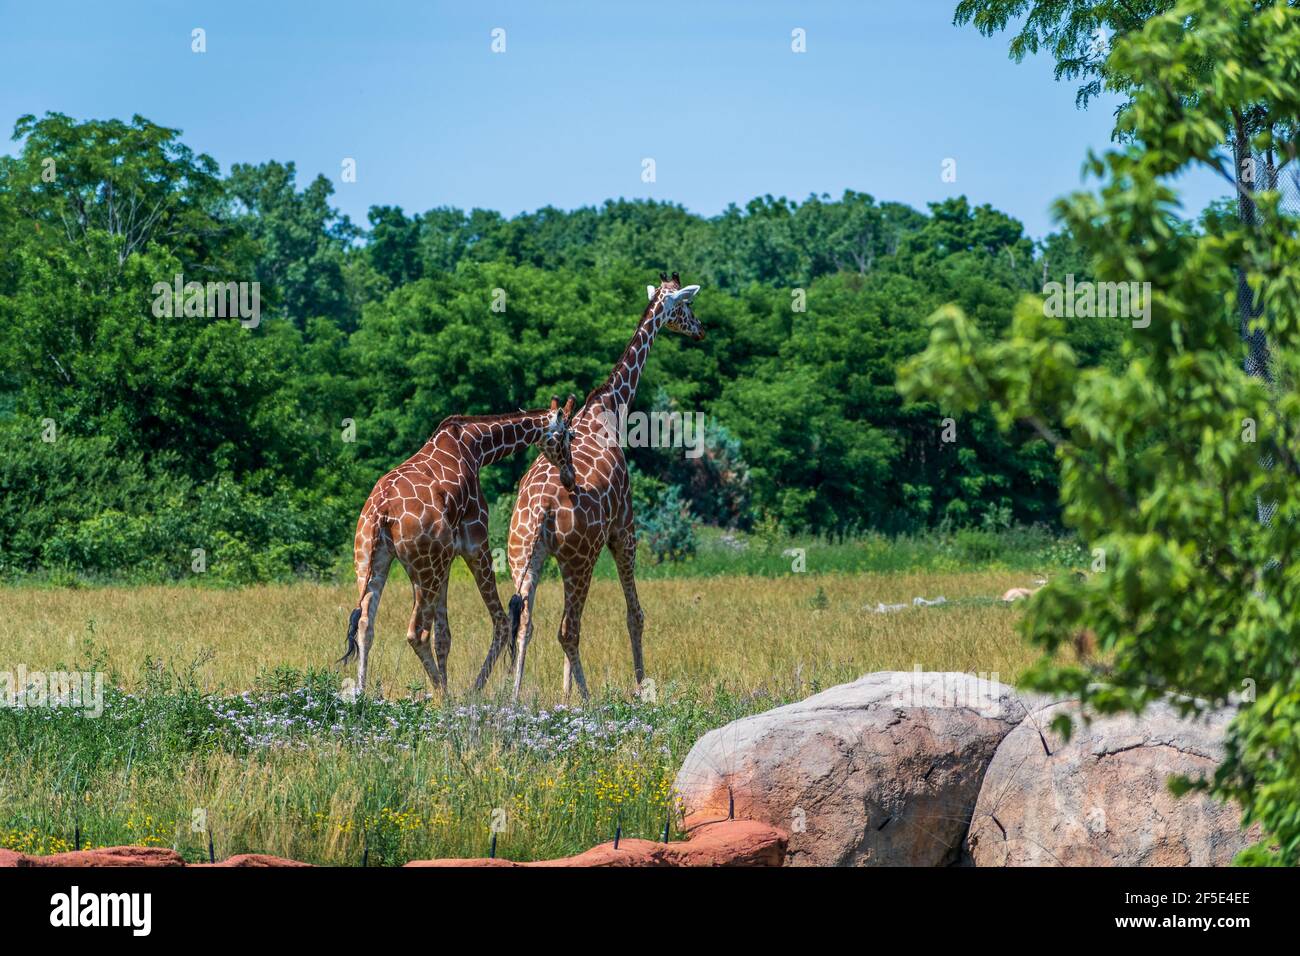 Foto di due giraffe dal retro che camminano nello spazio aperto circondato da un sacco di alberi verdi. Foto Stock